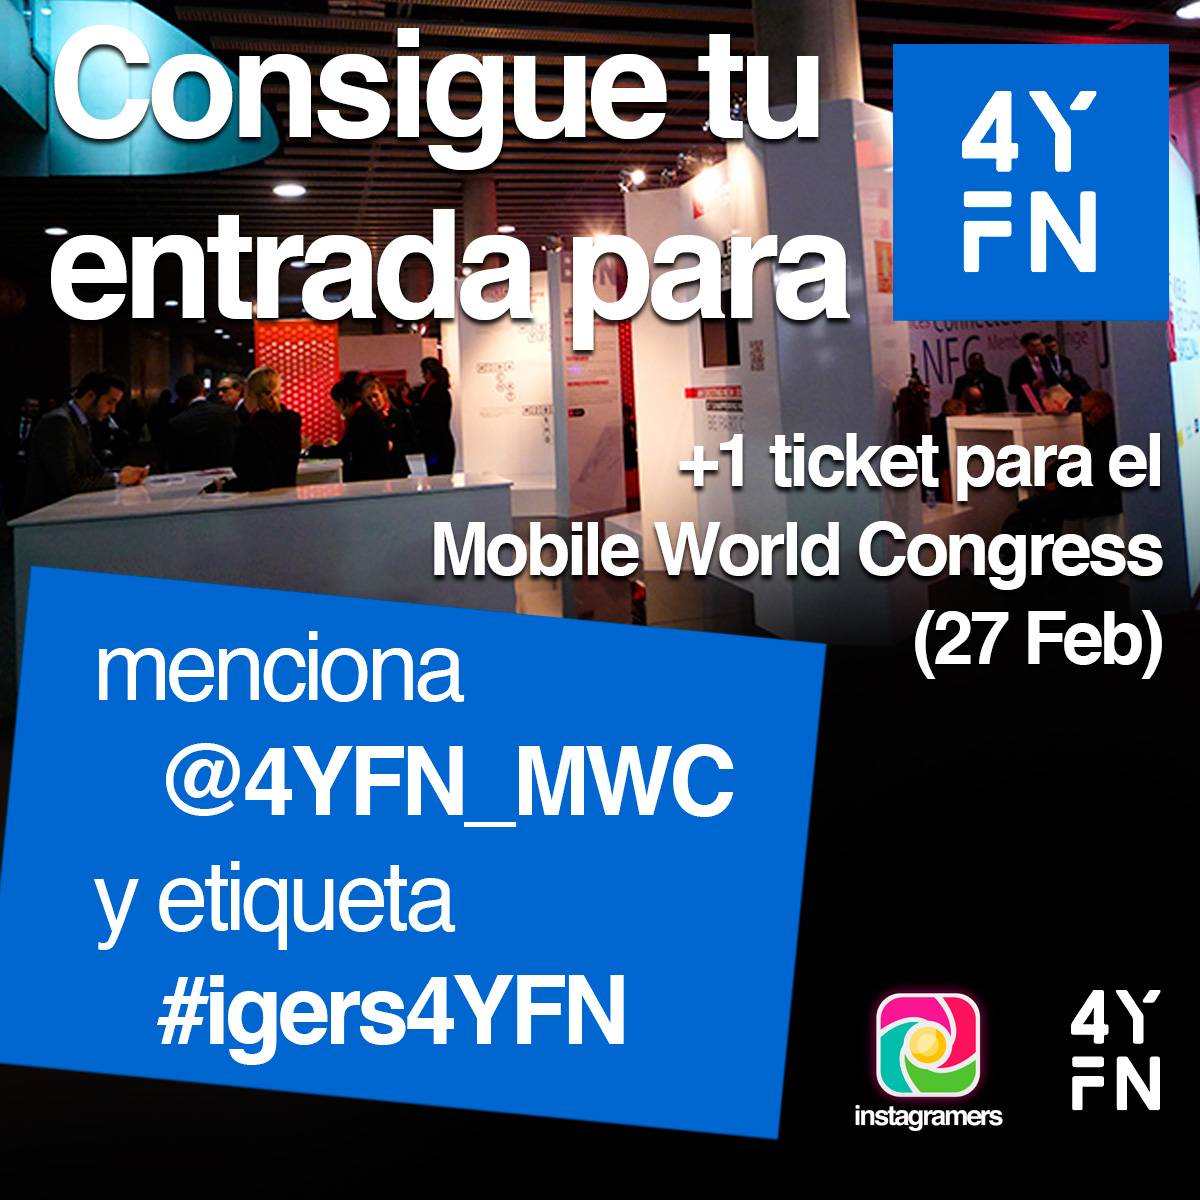 Concurso entradas para 4YFN Barcelona